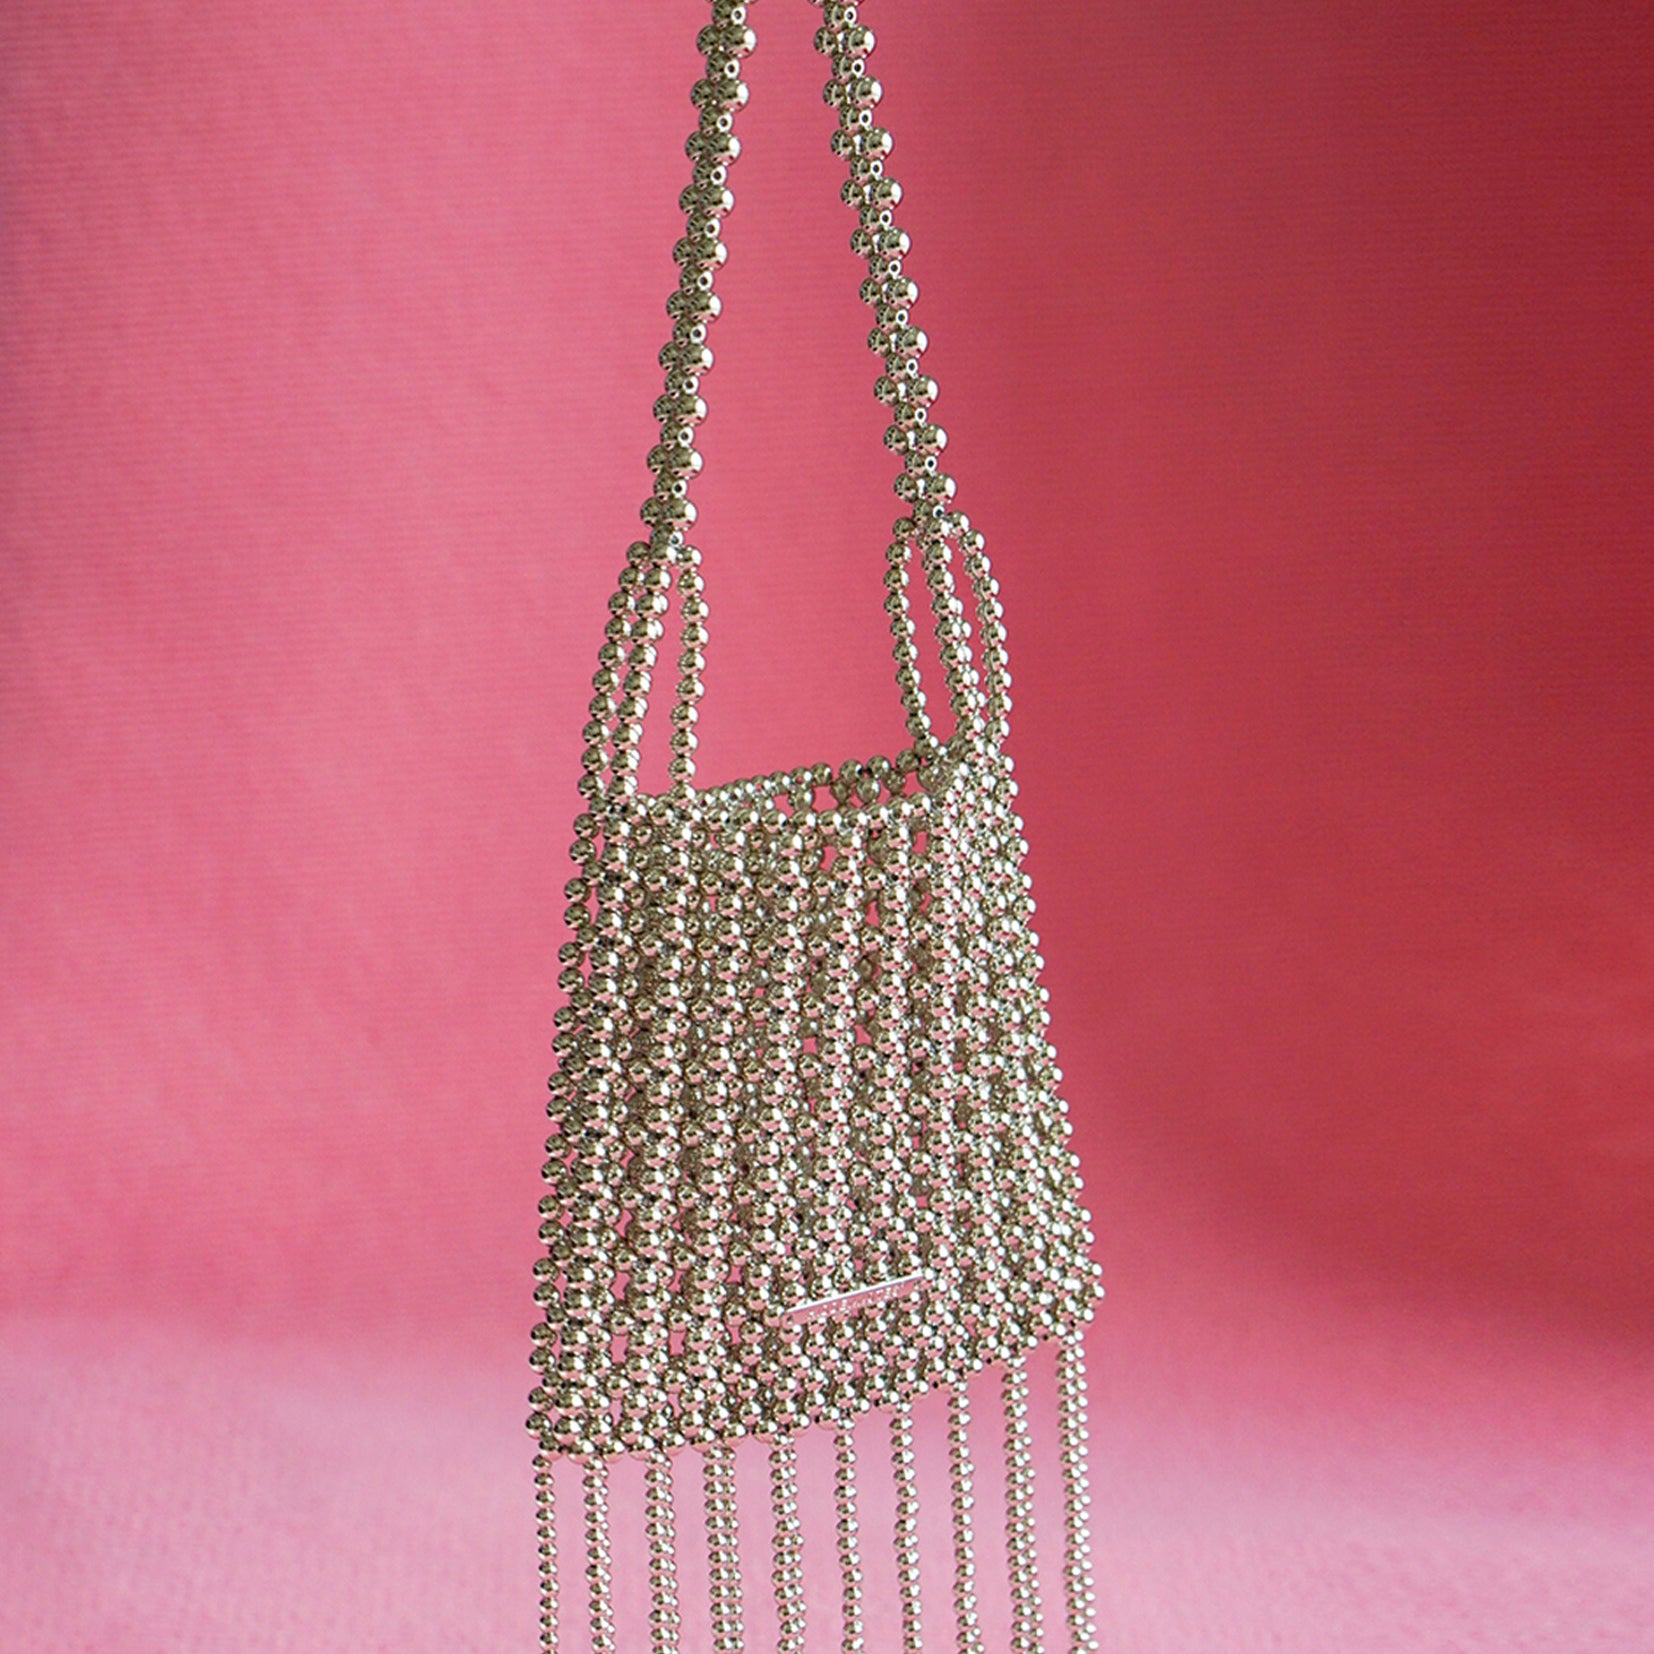 Bead fringe shoulder bag - silver